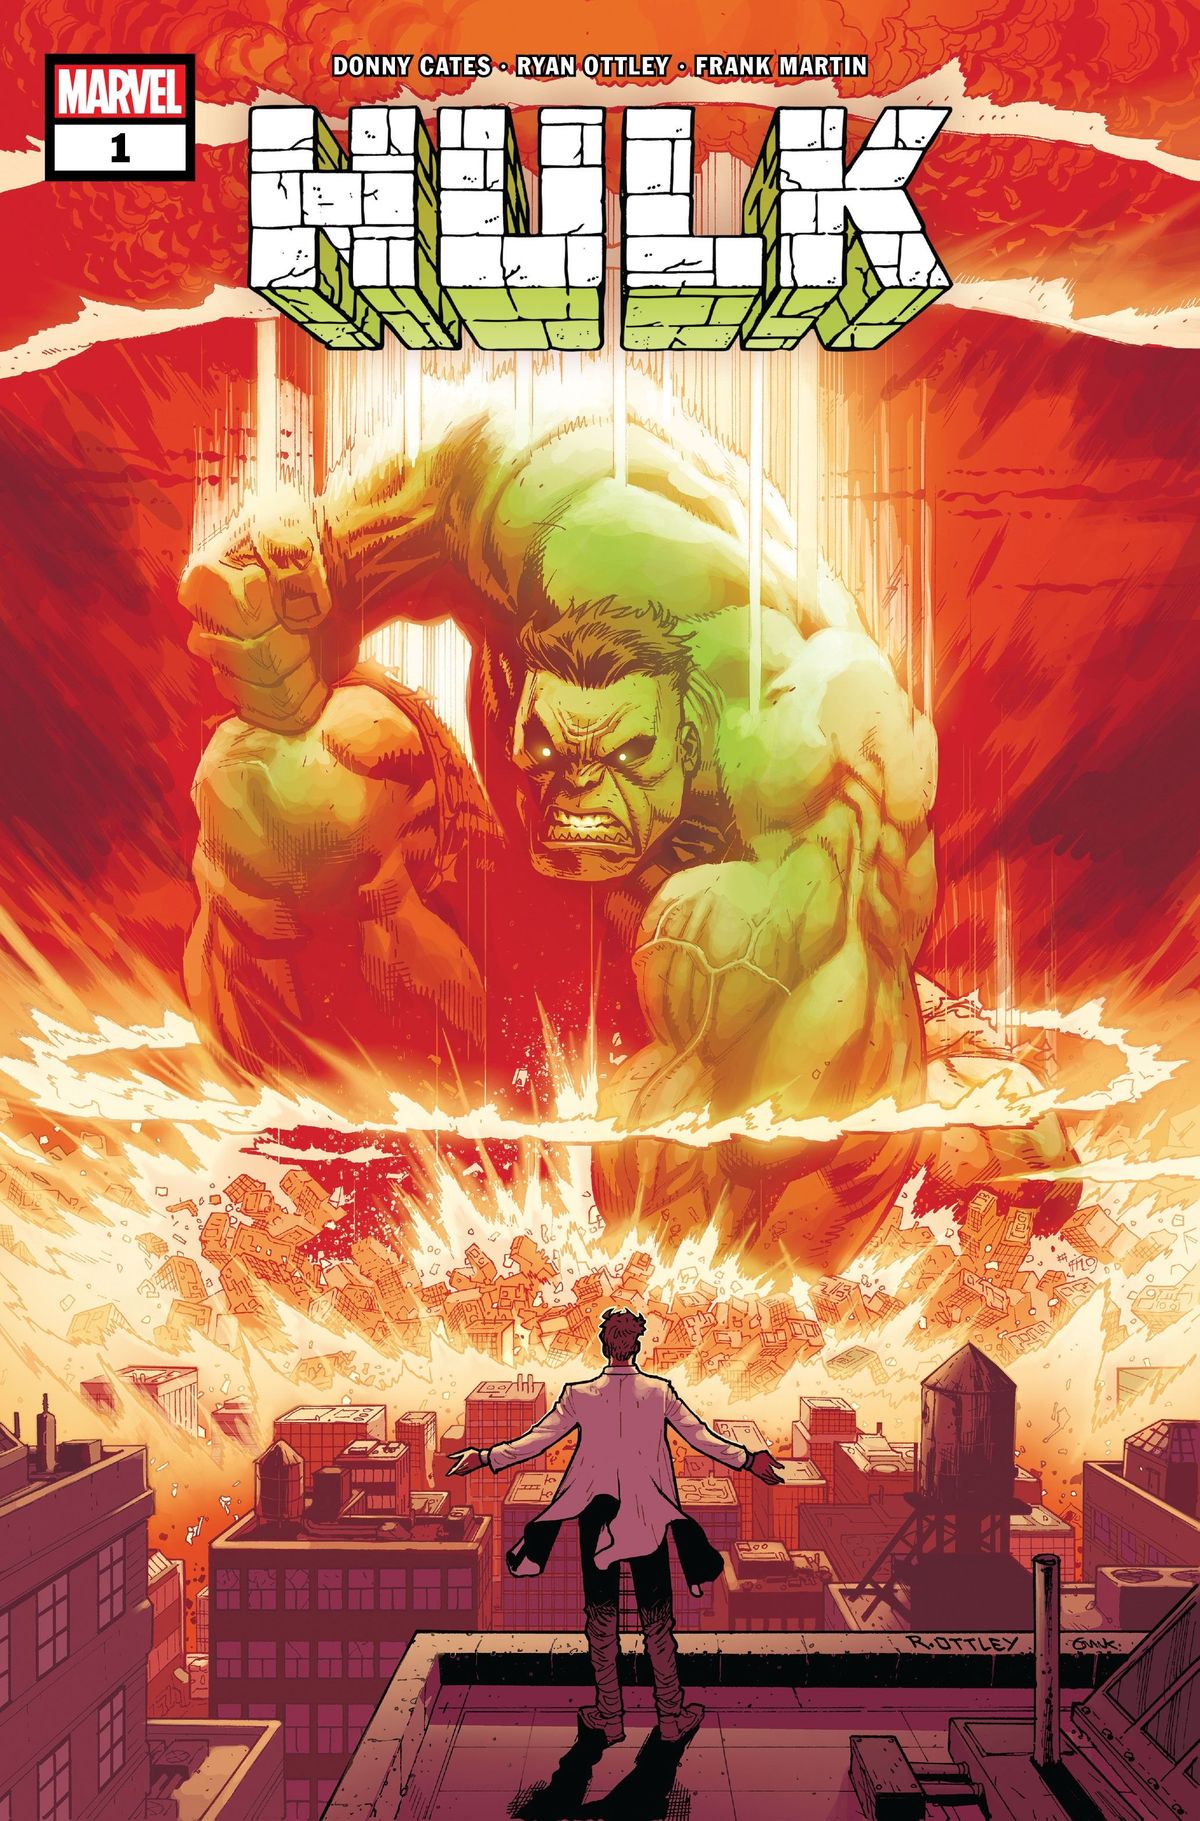 The Hulk: Cates & Ottley là nhóm sáng tạo hậu bất tử của Marvel